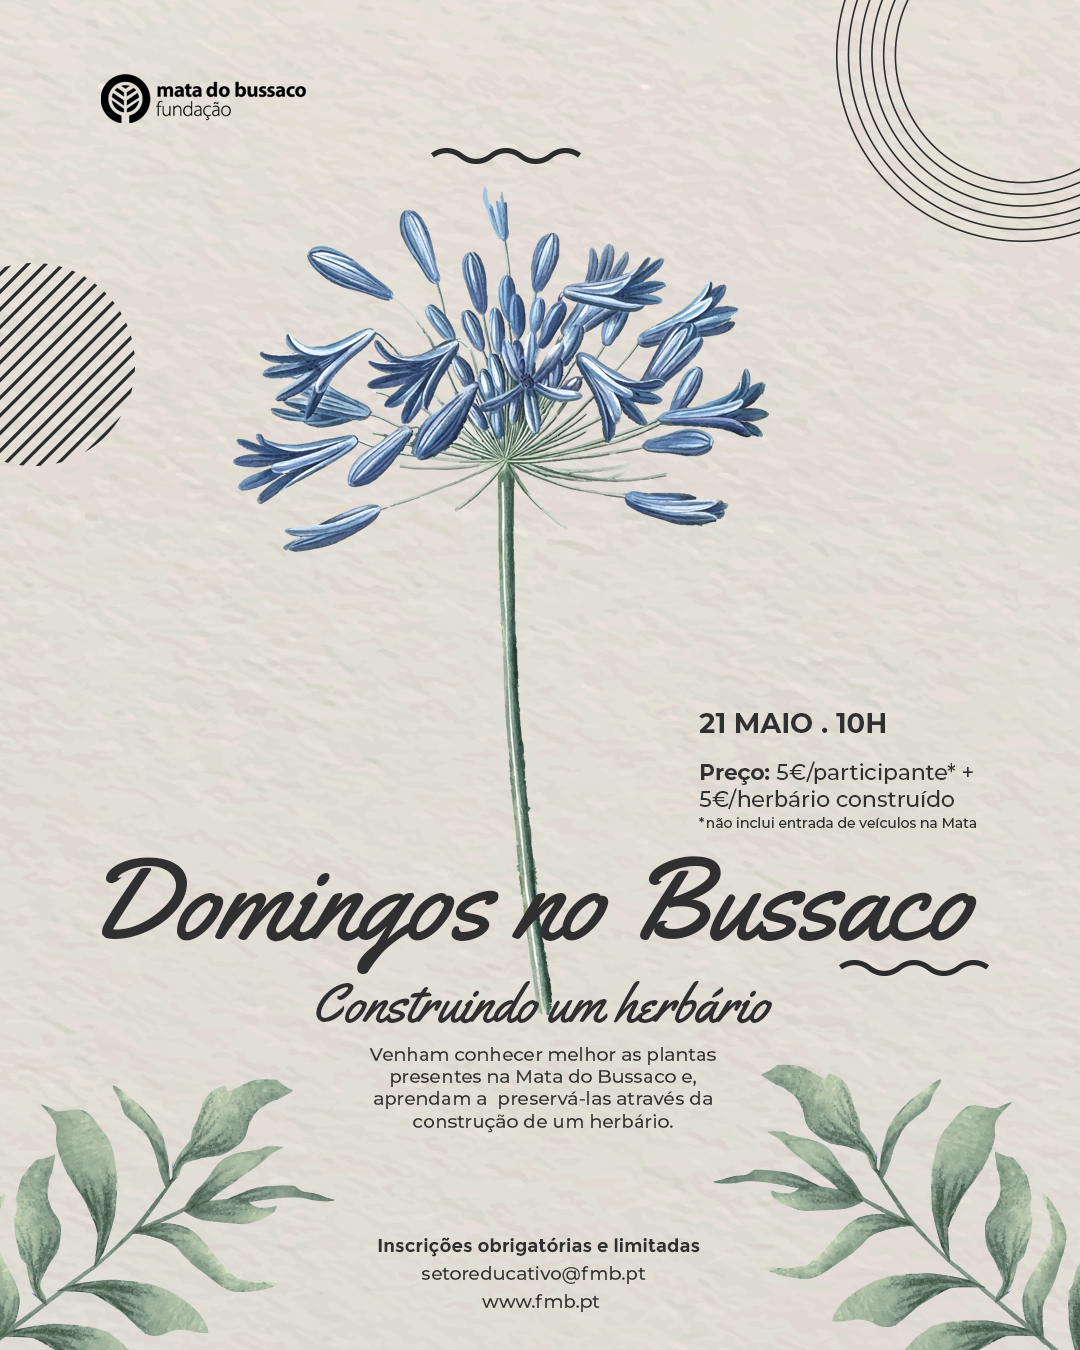 Domingos no Bussaco – Construindo um herbário